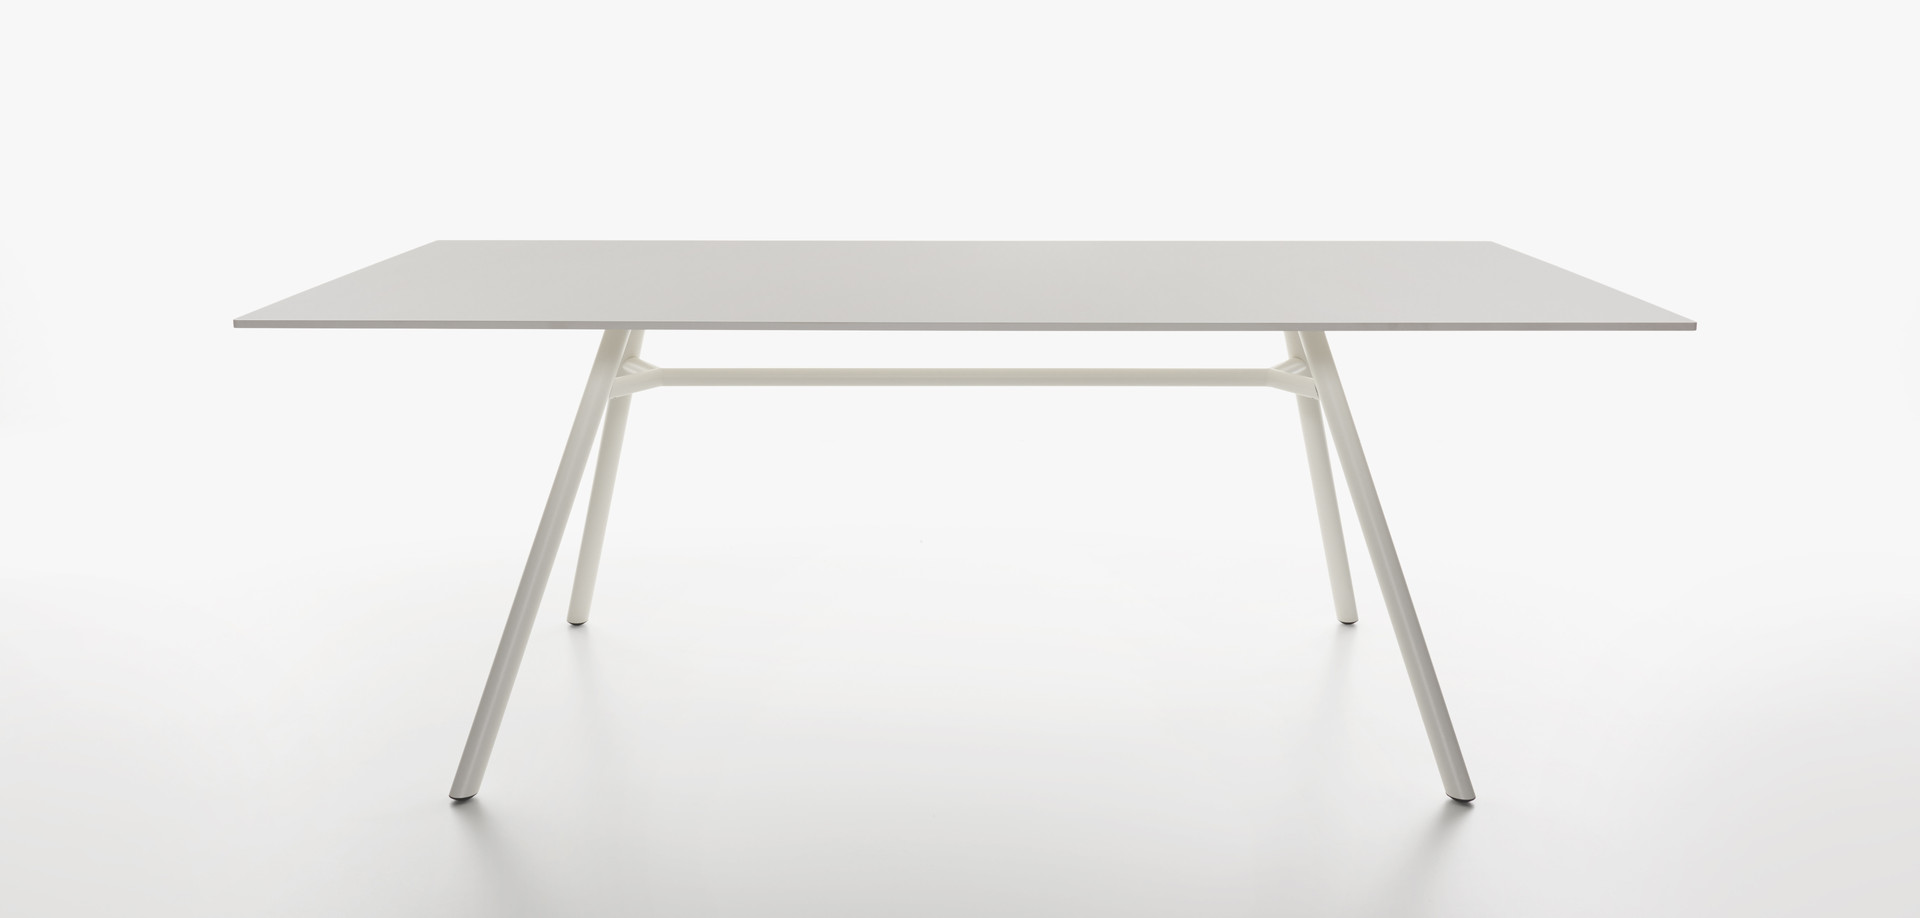 Plank - MART table, rectangular table top, white aluminum legs, white HPL top